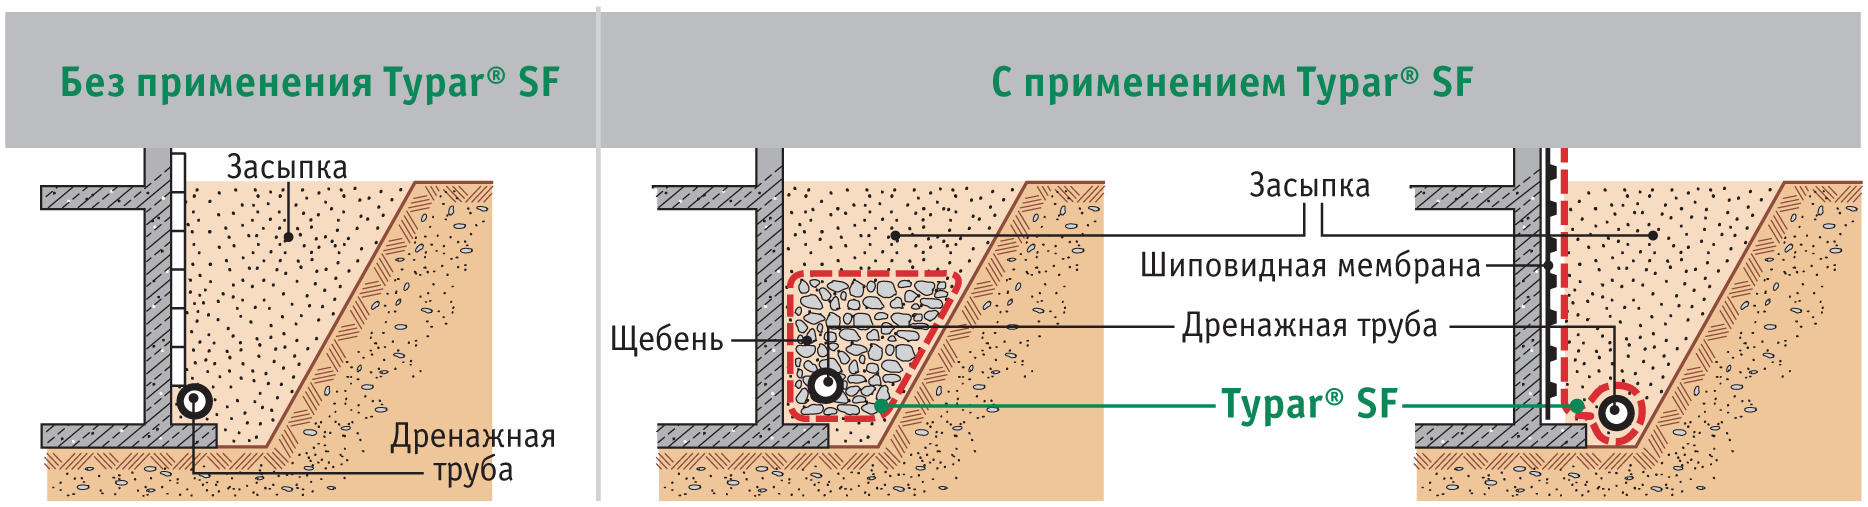 Дренаж фундамента: устройство и защита, схема отвода грунтовых вод